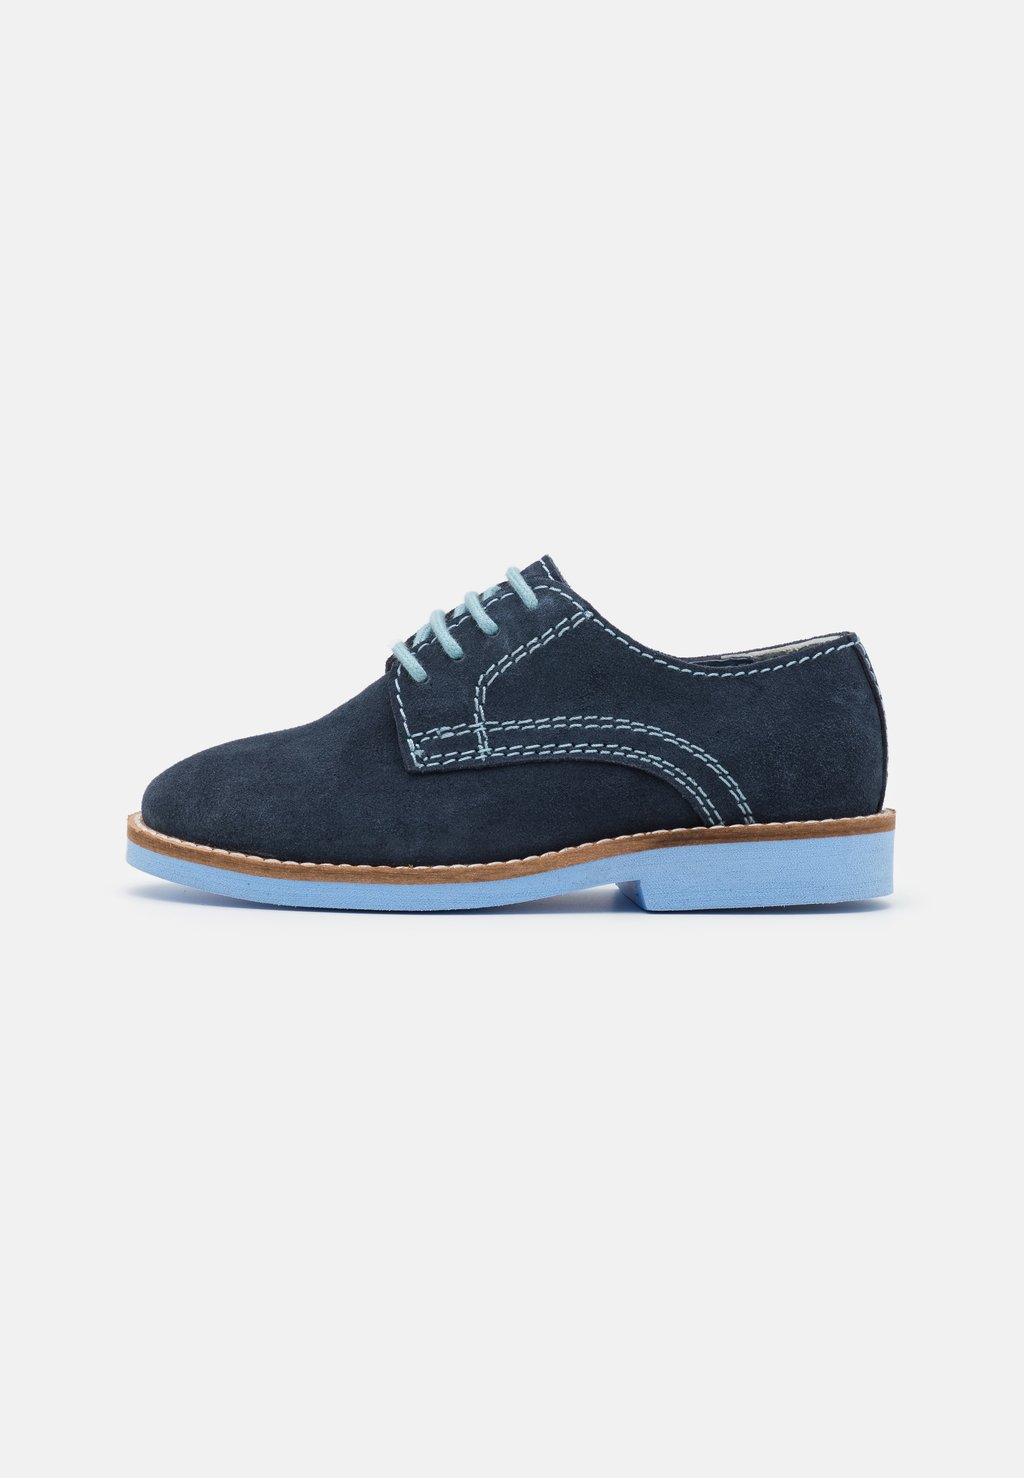 Спортивные туфли на шнуровке LEATHER Friboo, цвет dark blue